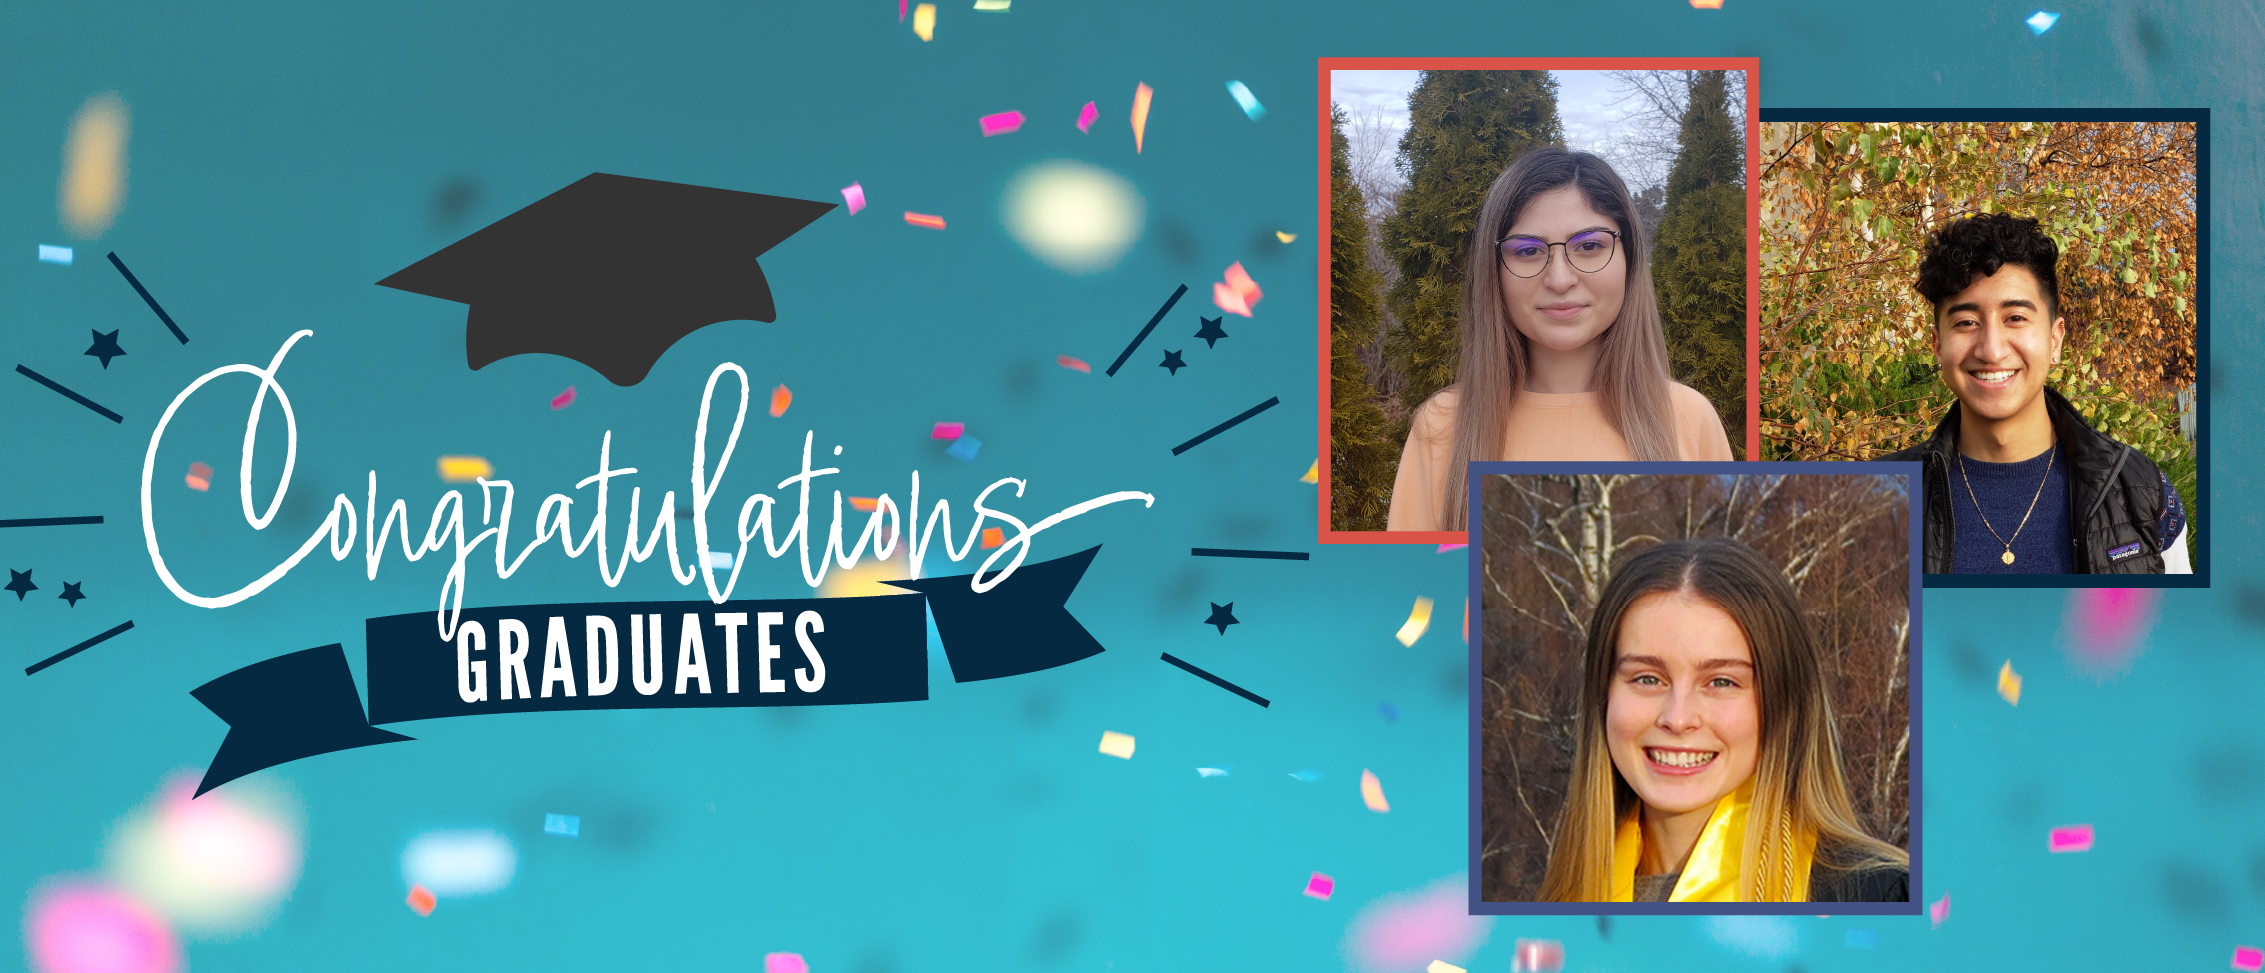 Congrats December 2021 graduates!